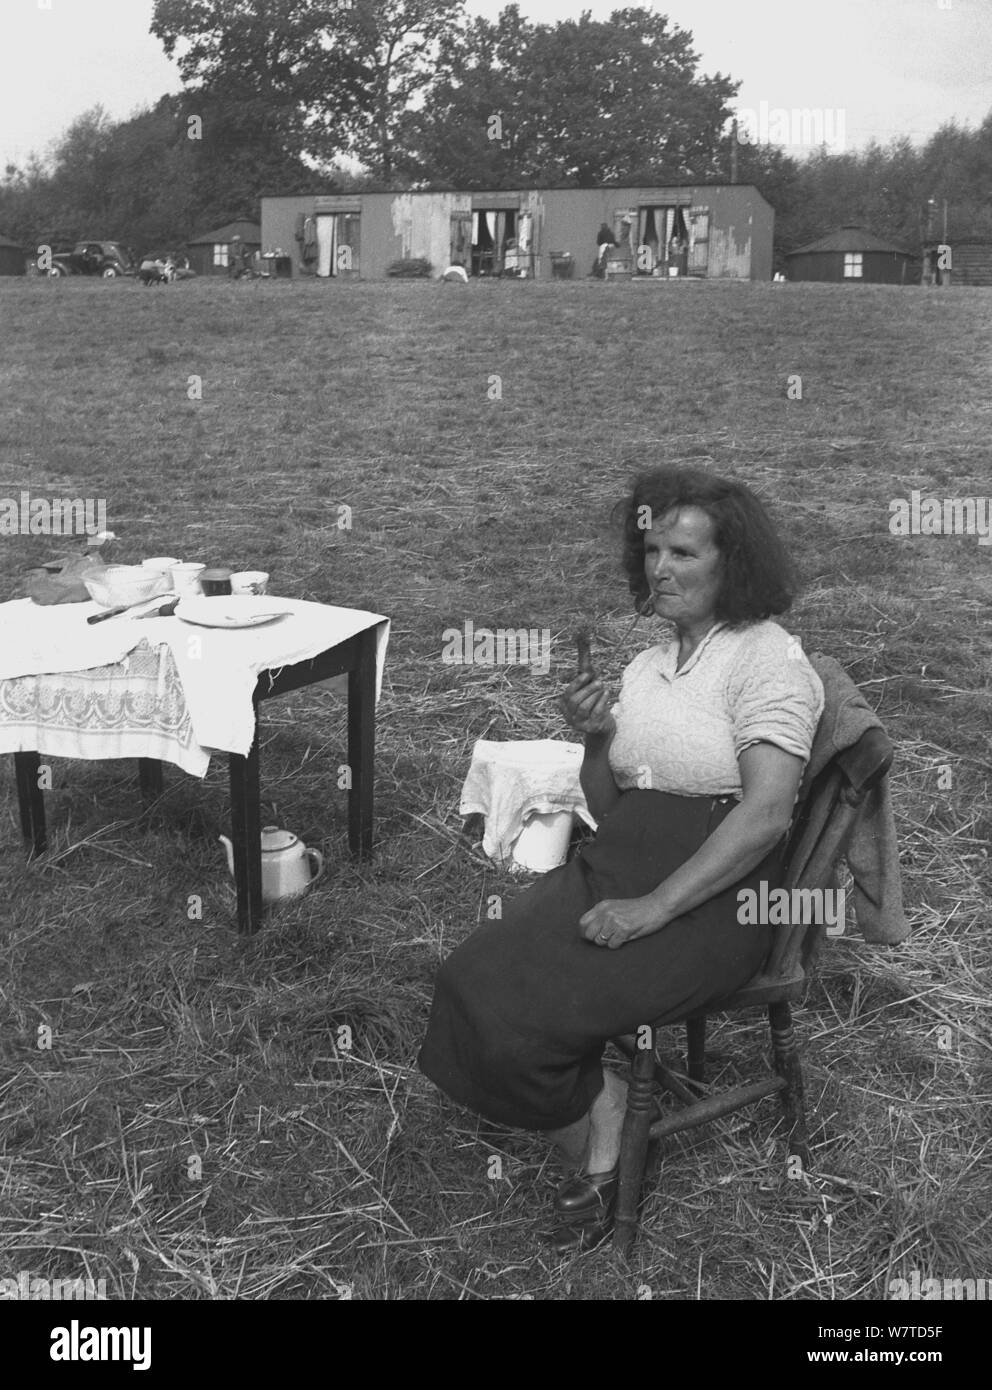 1951, historische, eine Dame landwirtschaftliche Arbeiter, ein Hop picker draußen sitzen auf einem Stuhl in einem Feld in eine Pause von der Arbeit Rauchen ein Rohr, Kent, England, UK. Das Hopper Hütten in der Ferne gesehen wurden aus Wellpappe Metall (Stahl) und waren die Unterkünfte für die Arbeiter woking in die Felder ein. Stockfoto